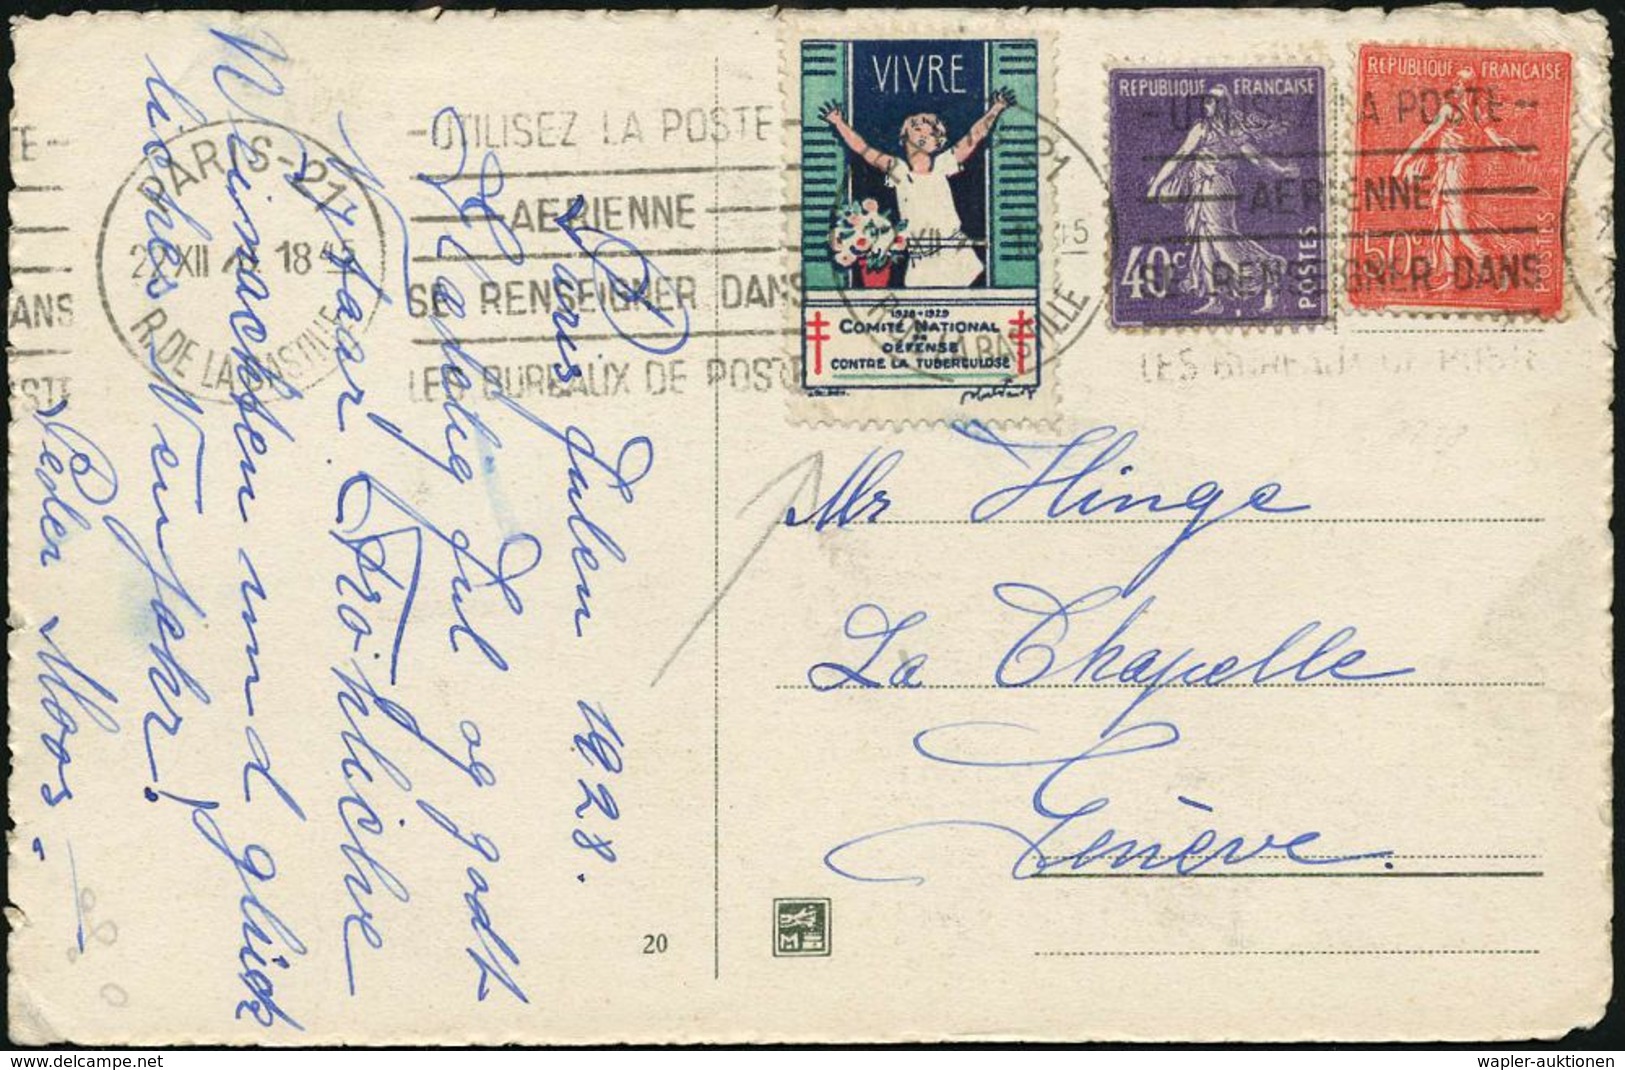 TUBERKULOSE / TBC-VORSORGE : FRANKREICH 1928 (22.12.) Tbc-Spendenmarke "VIVRE" Mit Frankatur Abgestempelt ,Weihnachts- A - Krankheiten